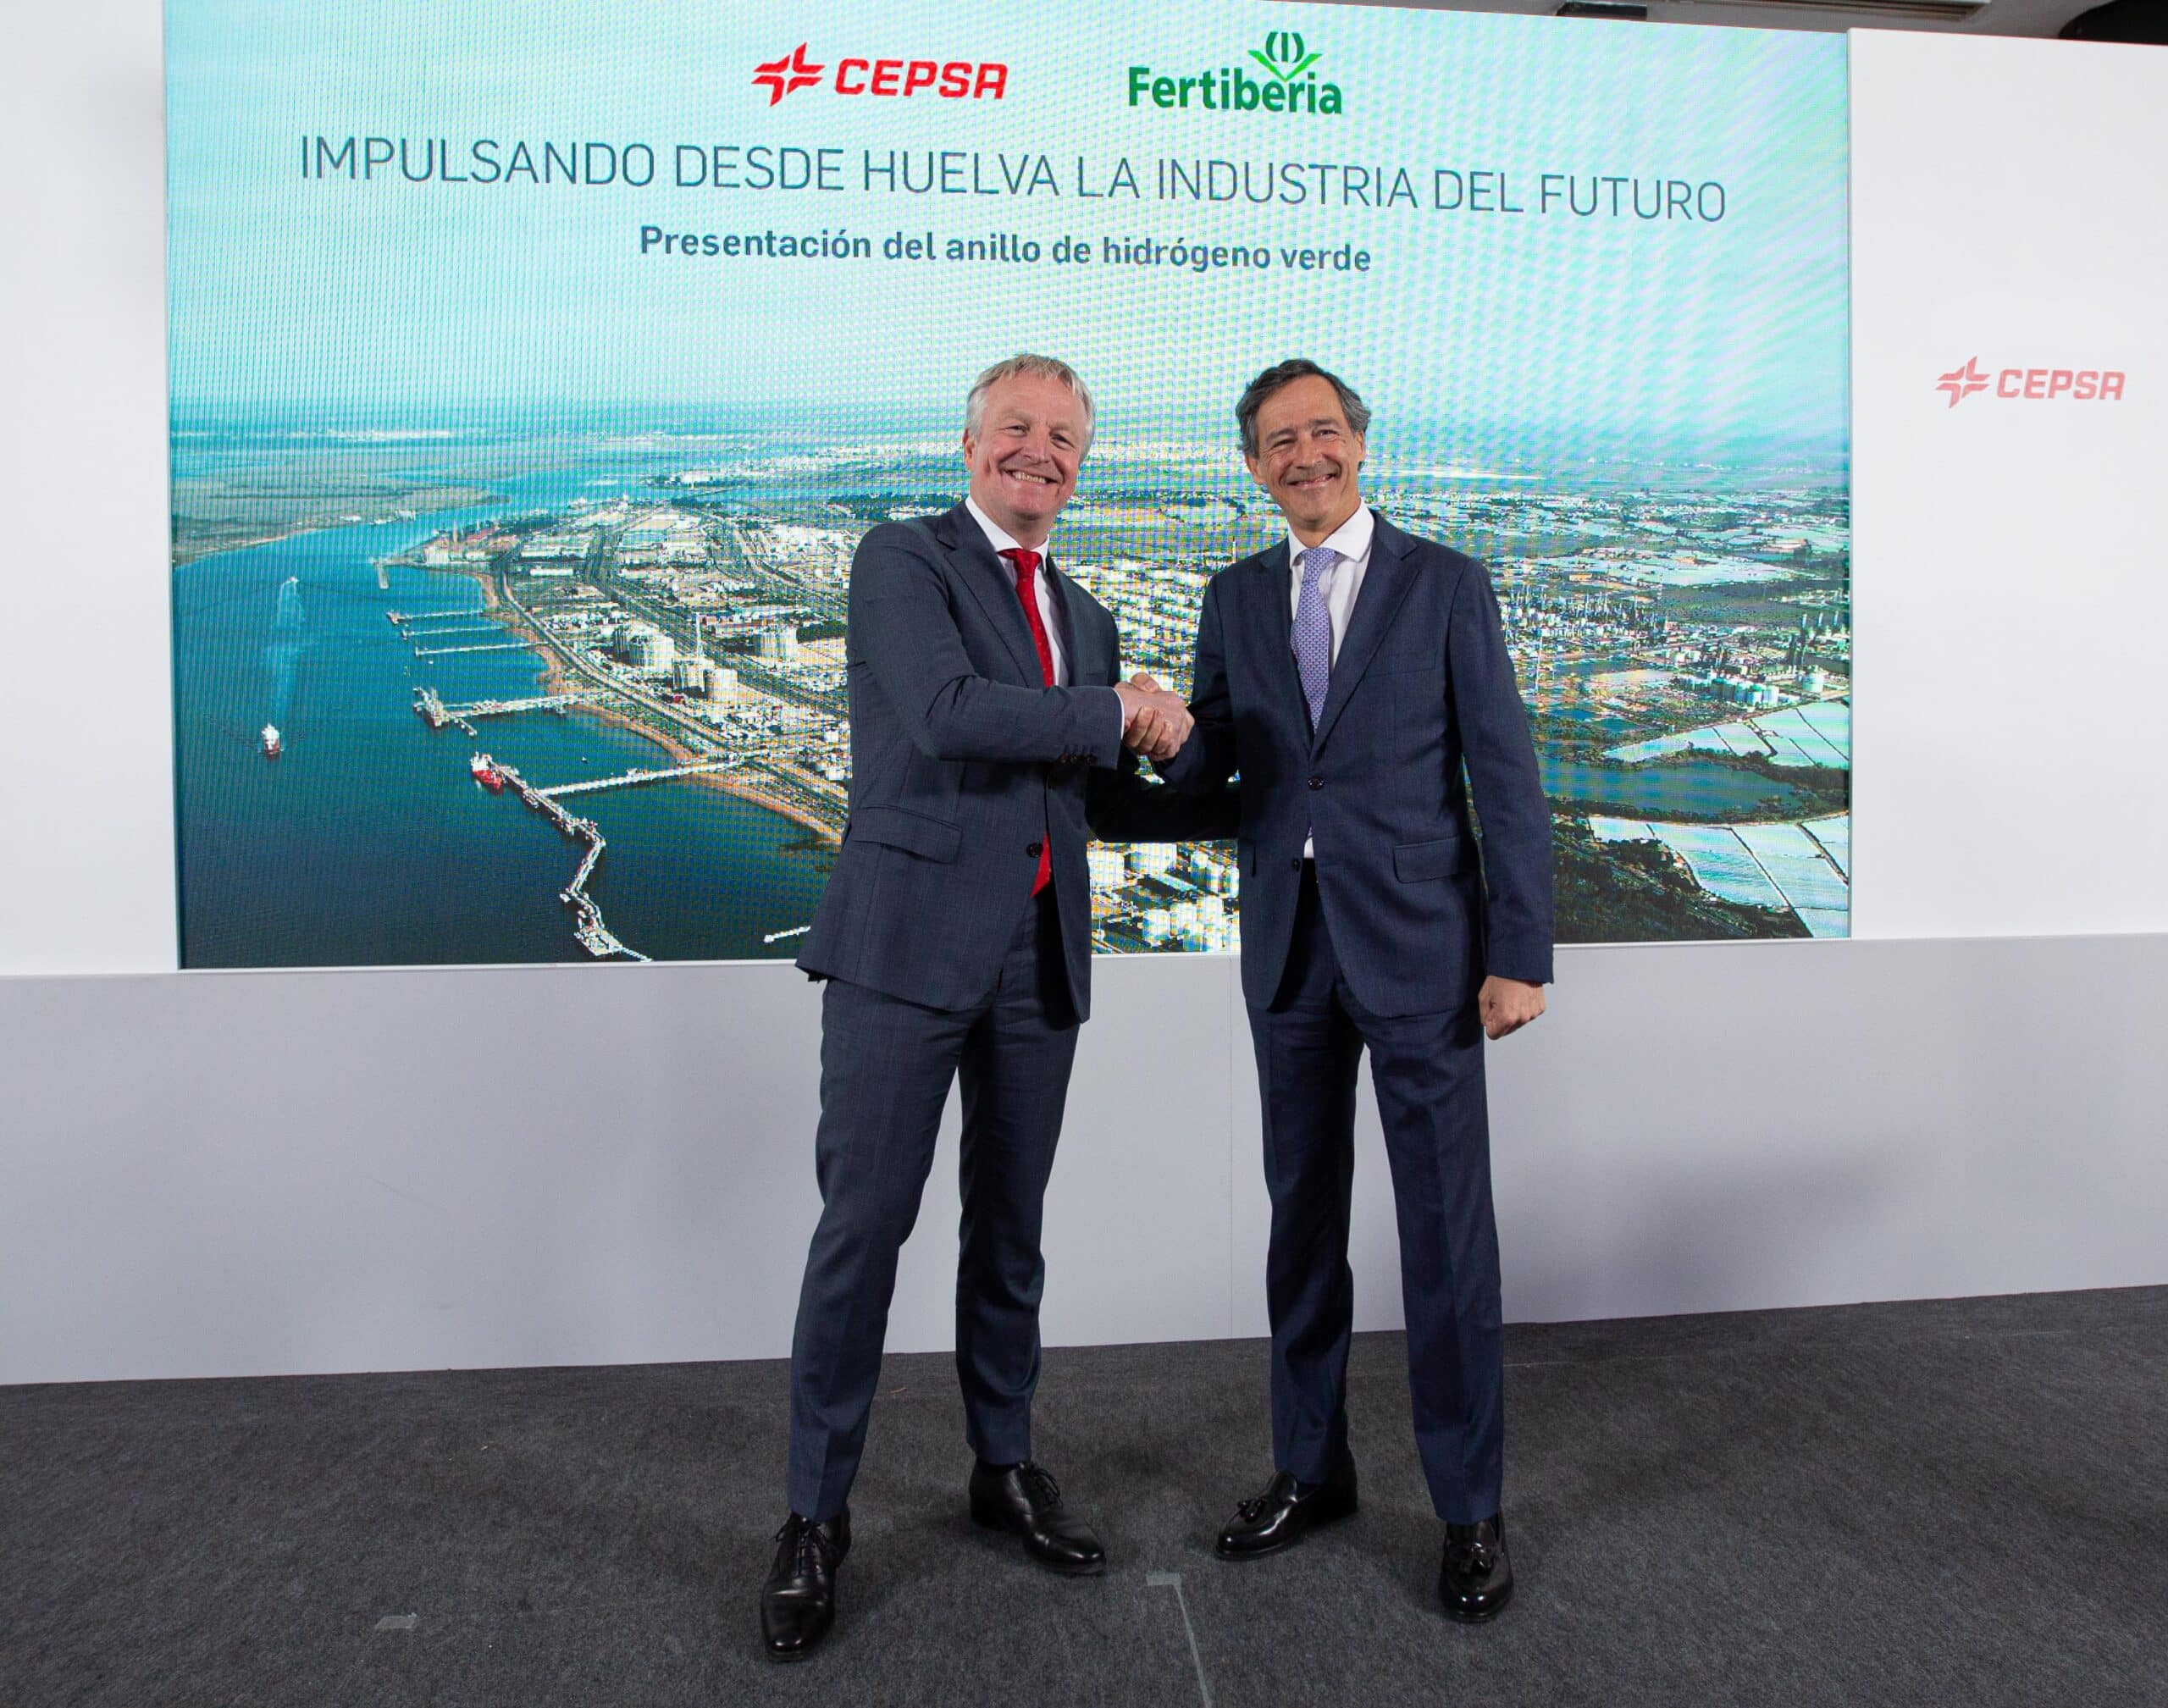 Fertiberia y Cepsa firman una alianza estratégica para impulsar la producción de hidrógeno verde y descarbonizar la industria en Huelva